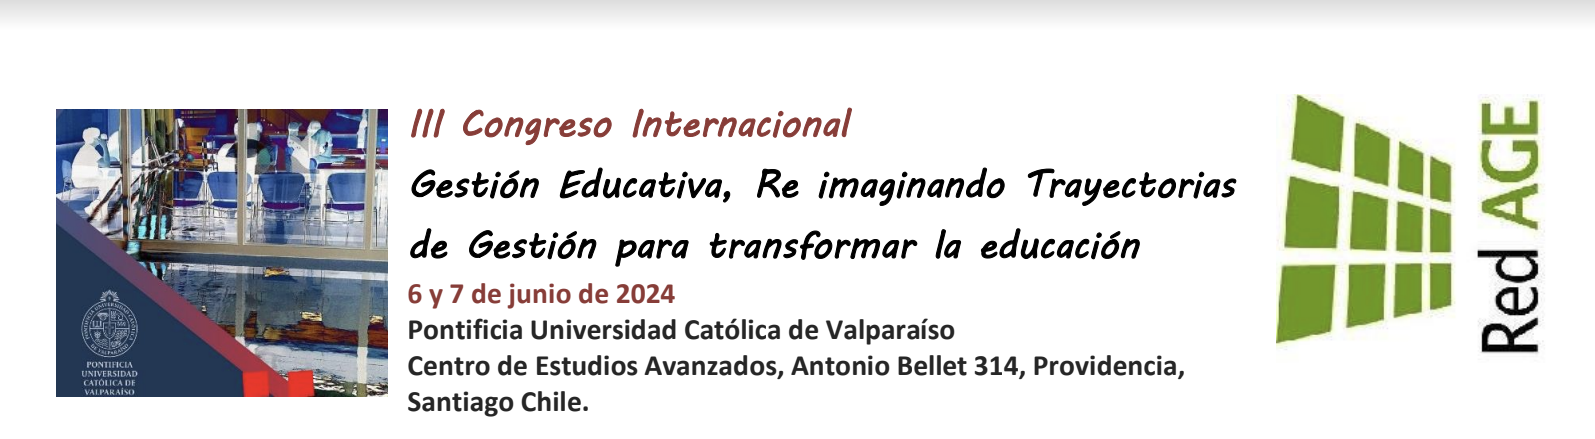 lll Congreso Internacional: Gestión Educativa, Re imaginando Trayectorias de Gestión para transformar la educación 